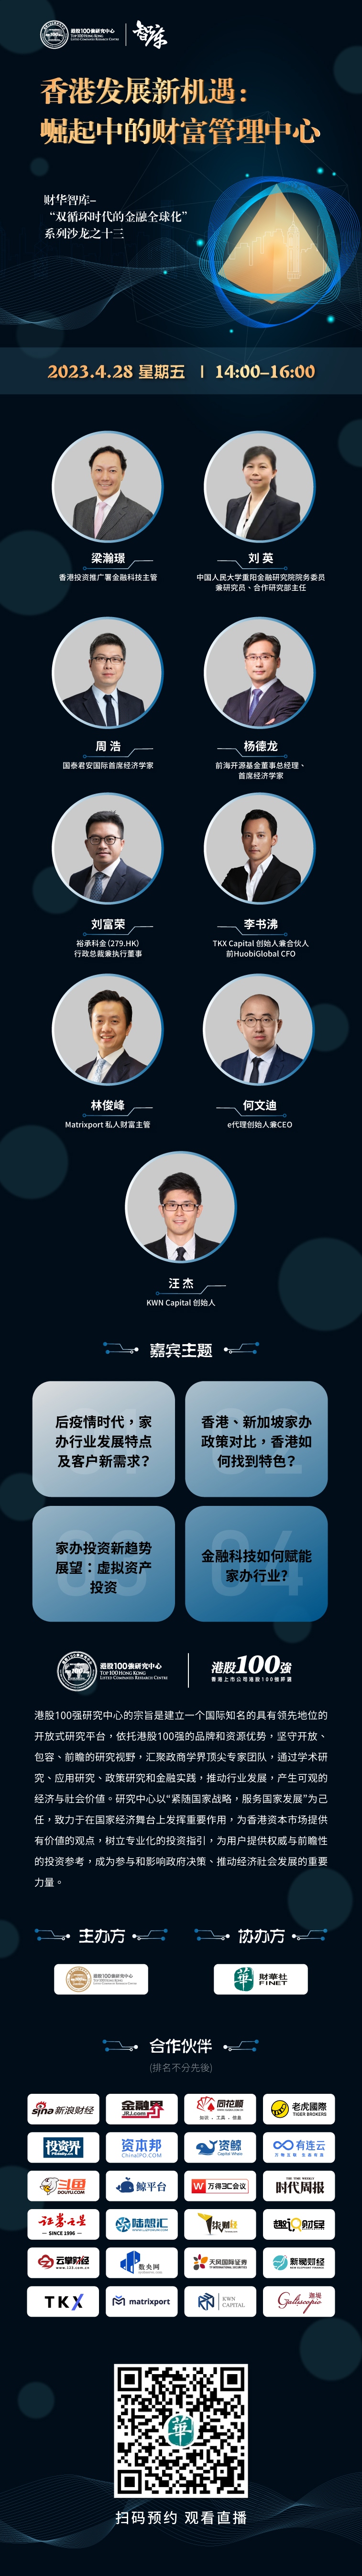 香港发展新机遇：崛起中的财富管理中心 ——财华智库-“双循环时代的金融全球化”系列沙龙之十三